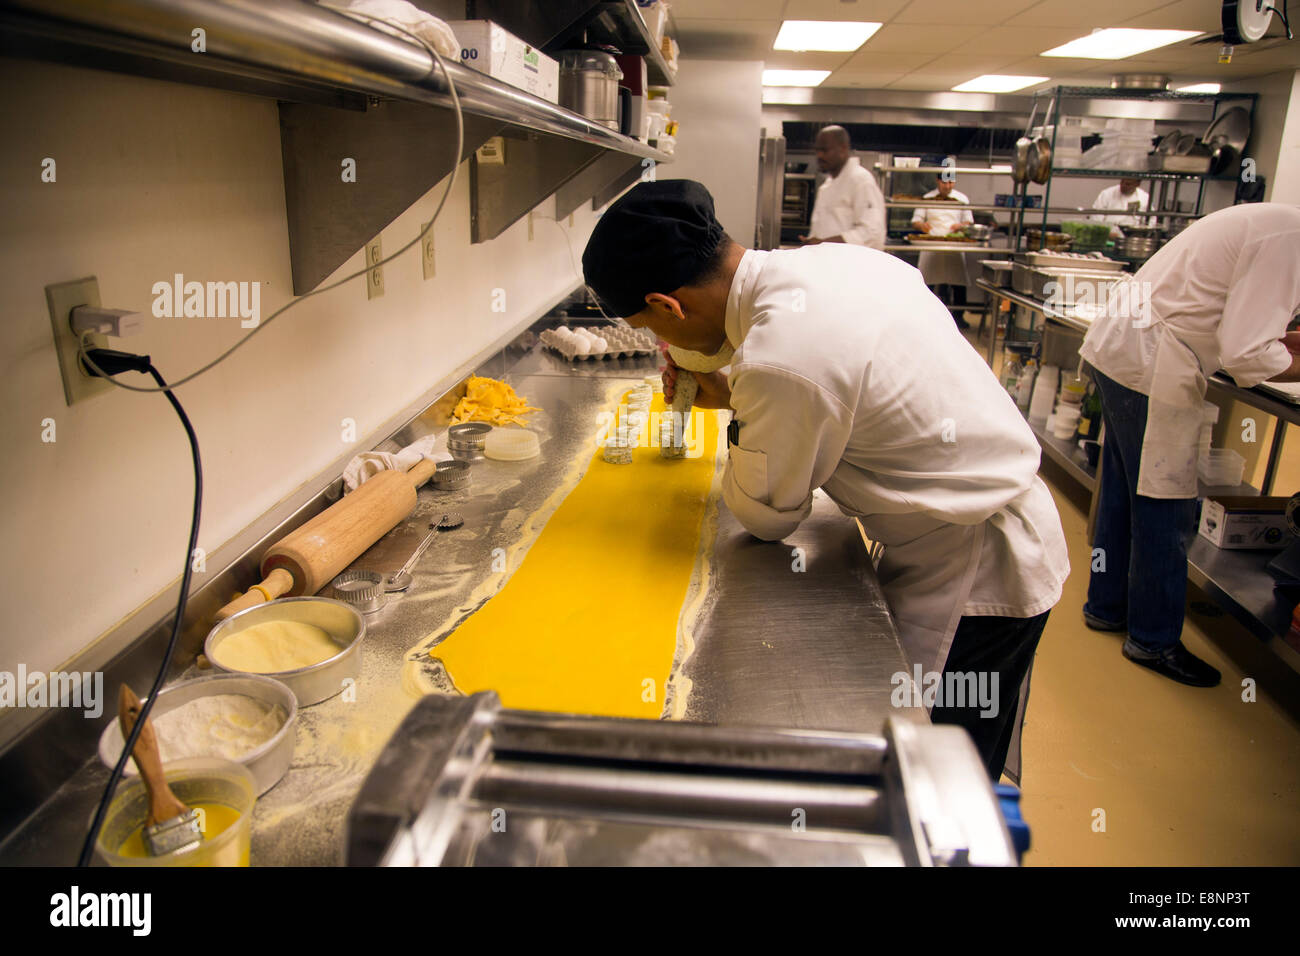 Chef working New York high end restaurant kitchen Stock Photo